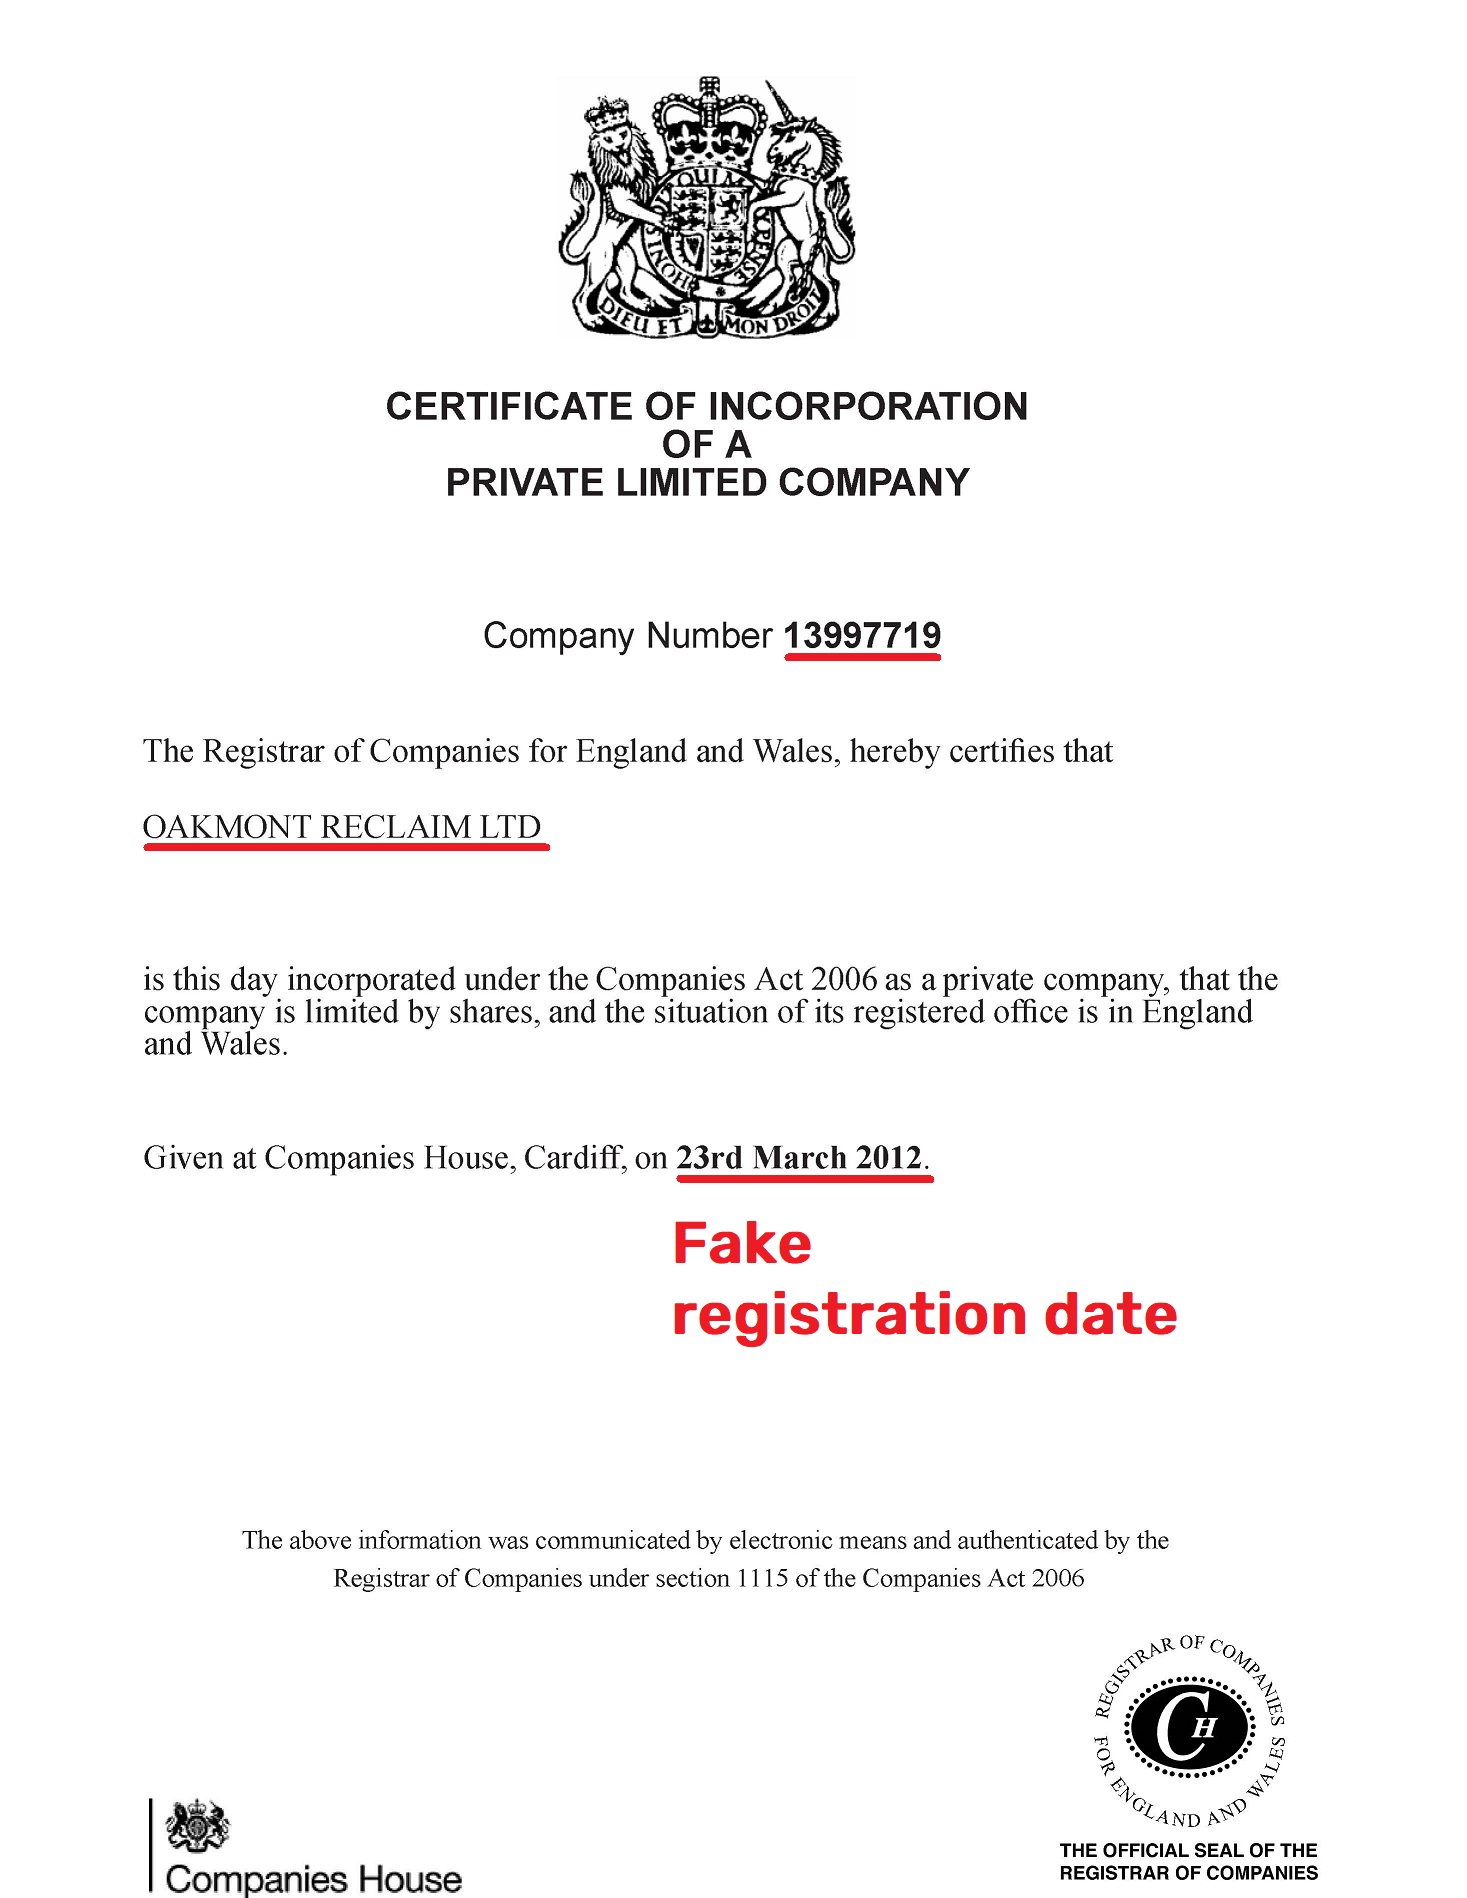 oakmontreclaim scam fake uk registration certificate